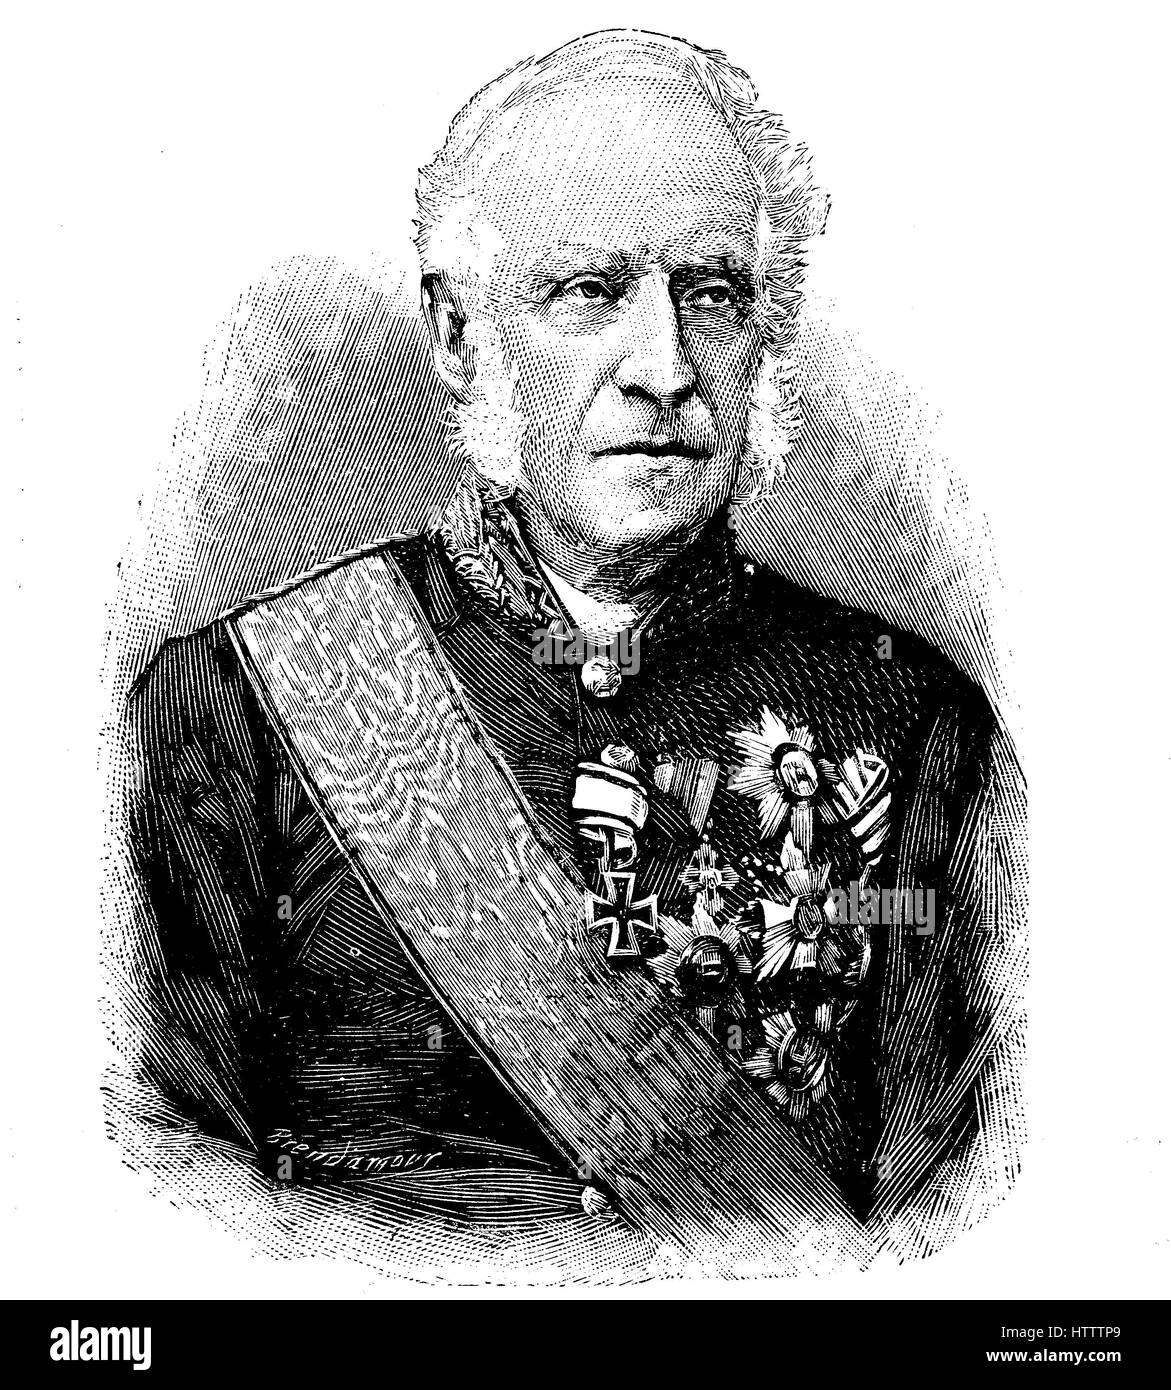 Joseph Franz Peter Freiherr von Linden, 7 giugno 1804 - 31 maggio 1895, era un tedesco giurista e politico nel Württemberg servizio di stato, la riproduzione di una xilografia dal 1882, digitale migliorata Foto Stock